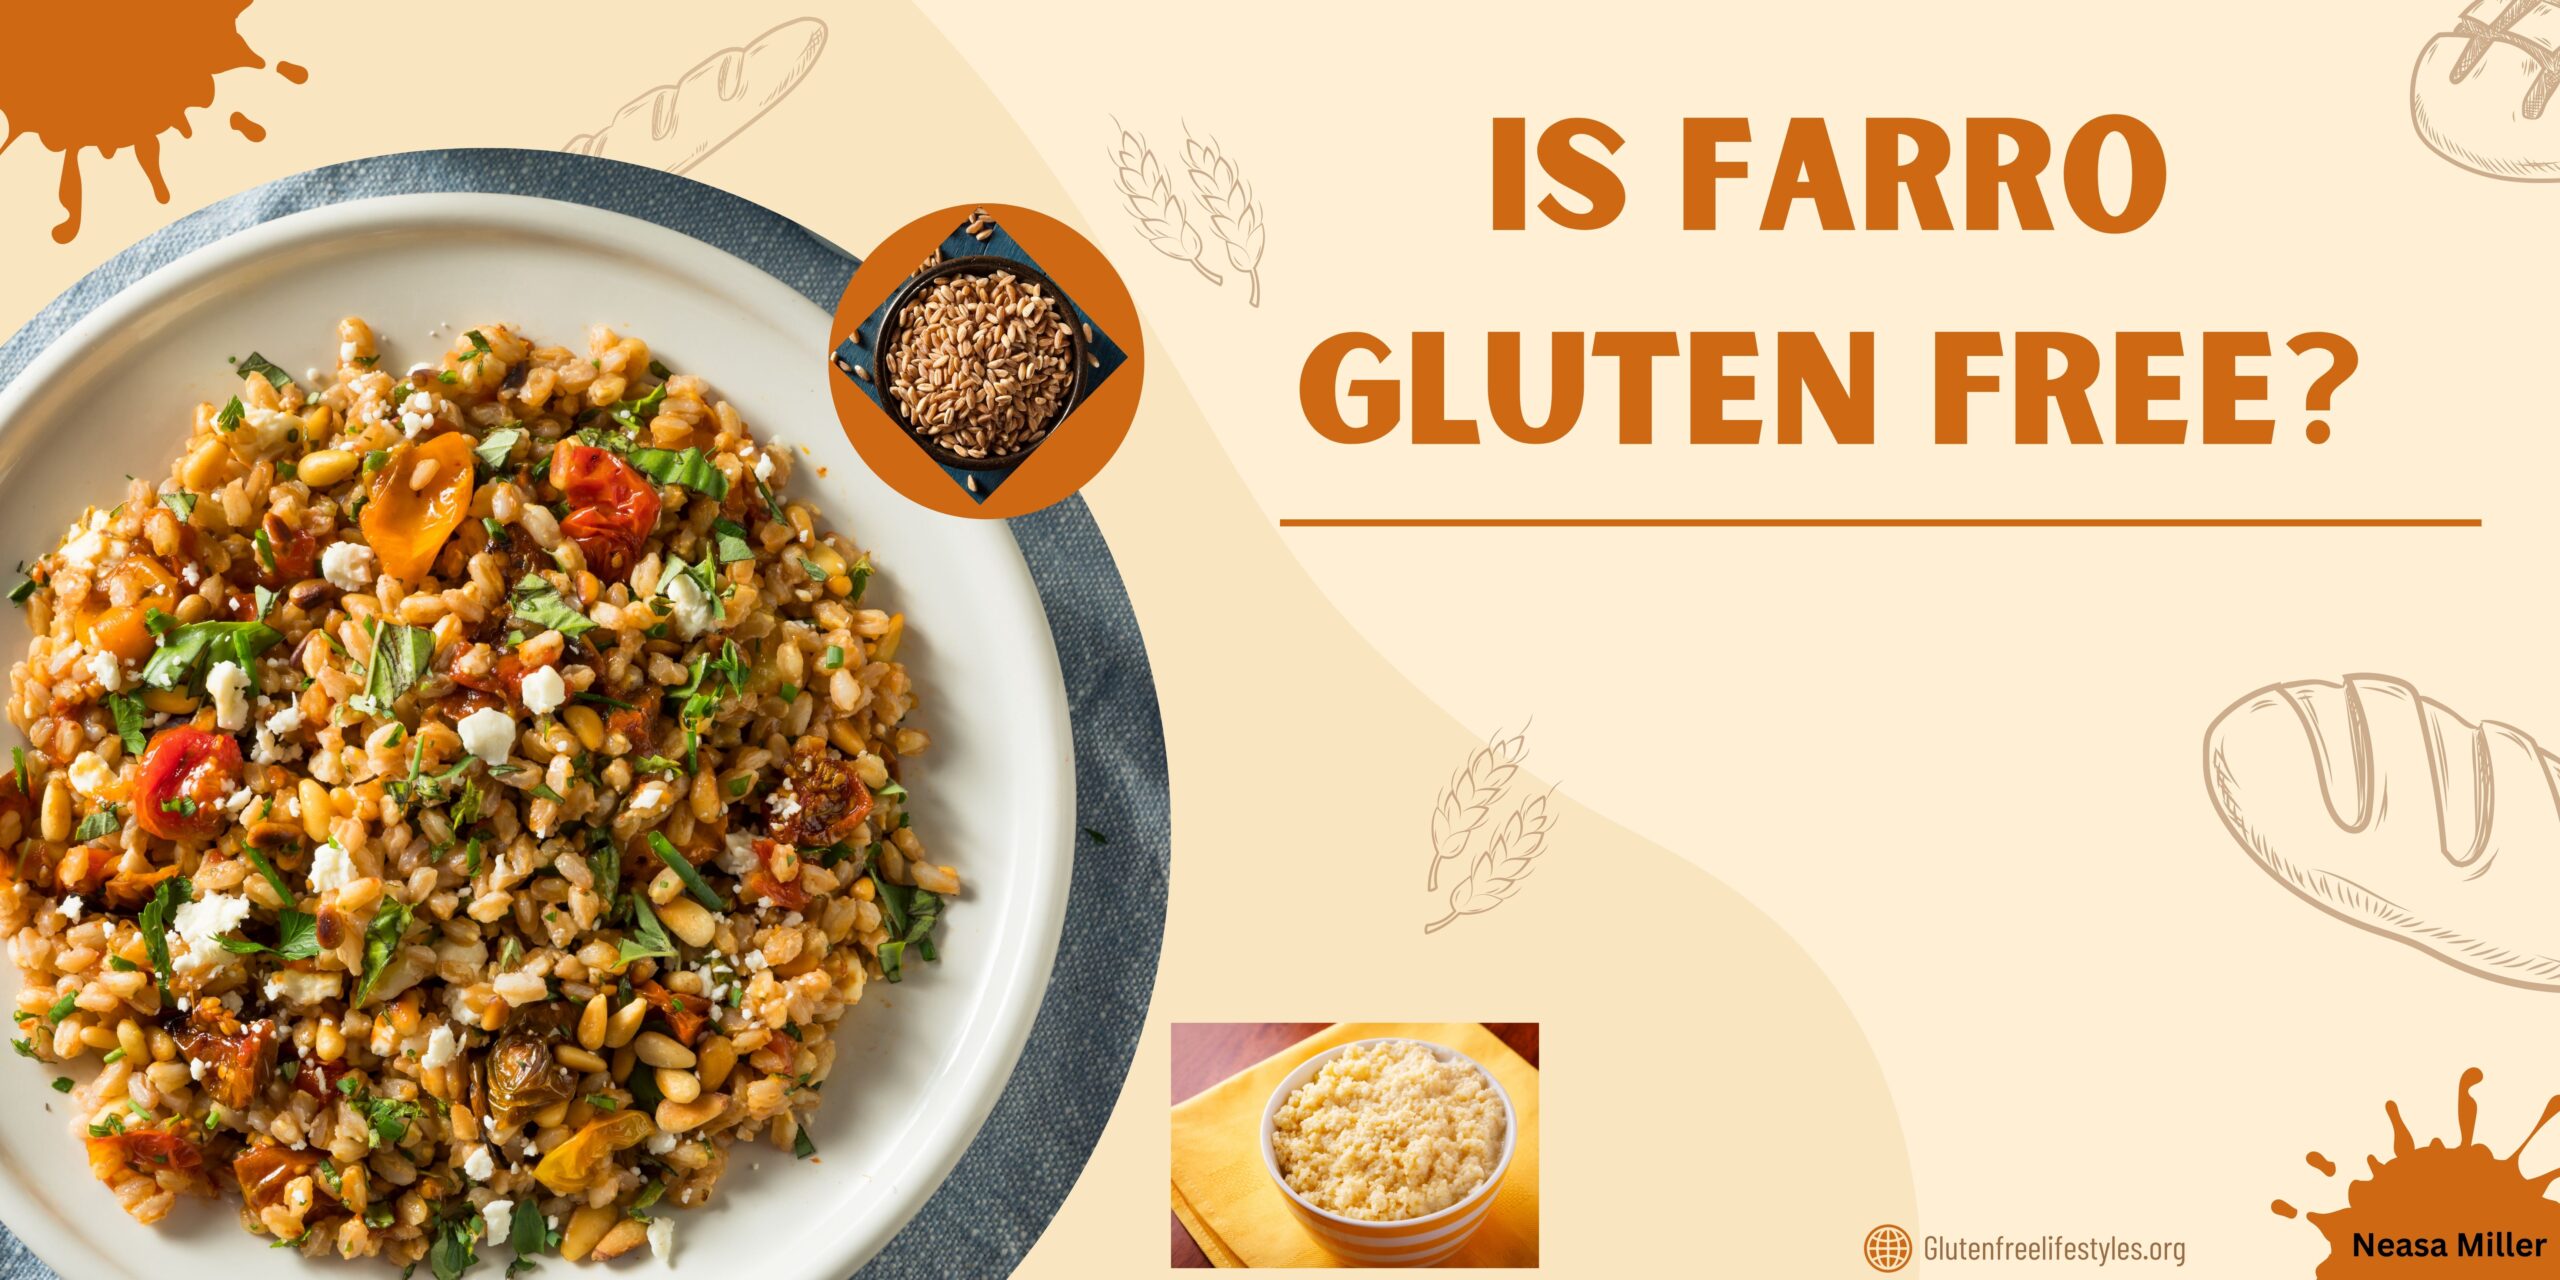 Is Farro Gluten Free?